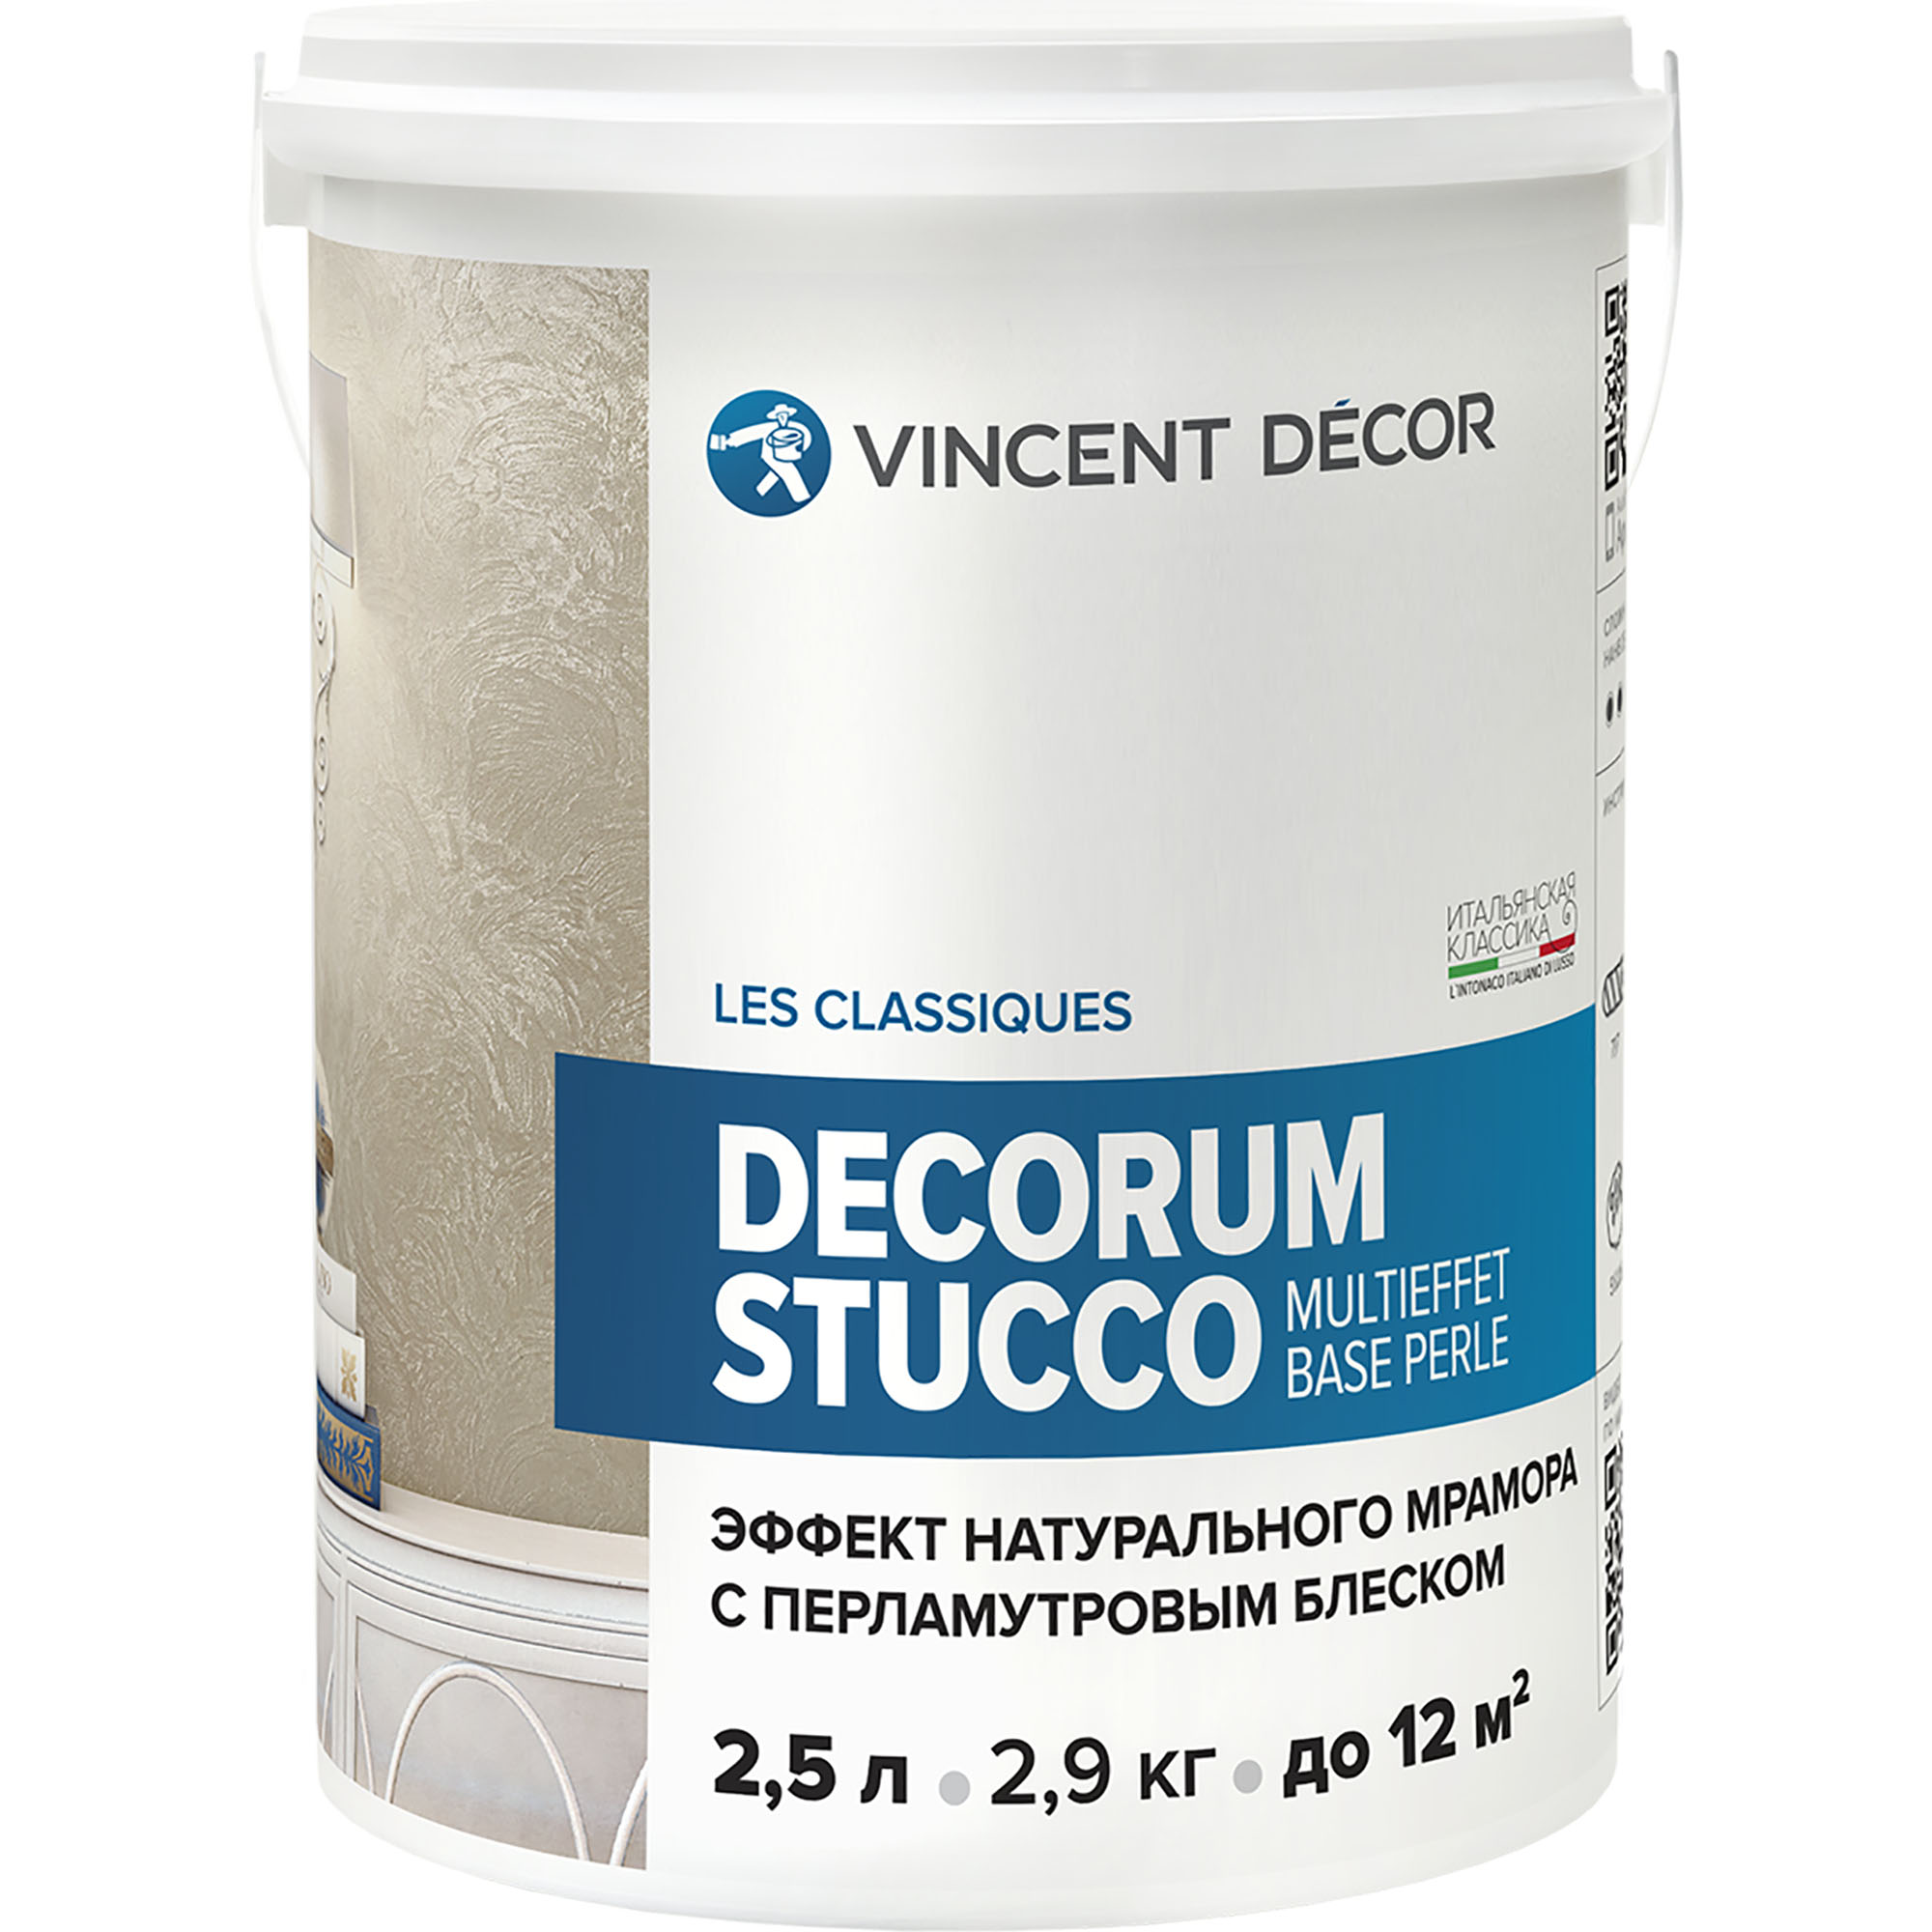 Декоративное покрытие для стен Vincent Decor Decorum Stucco Multieffet base Perle c эффектом натурального мрамора с перламутровым блеском 2,5 л штукатурка с эффектом натурального камня vincent decor decorum travertino